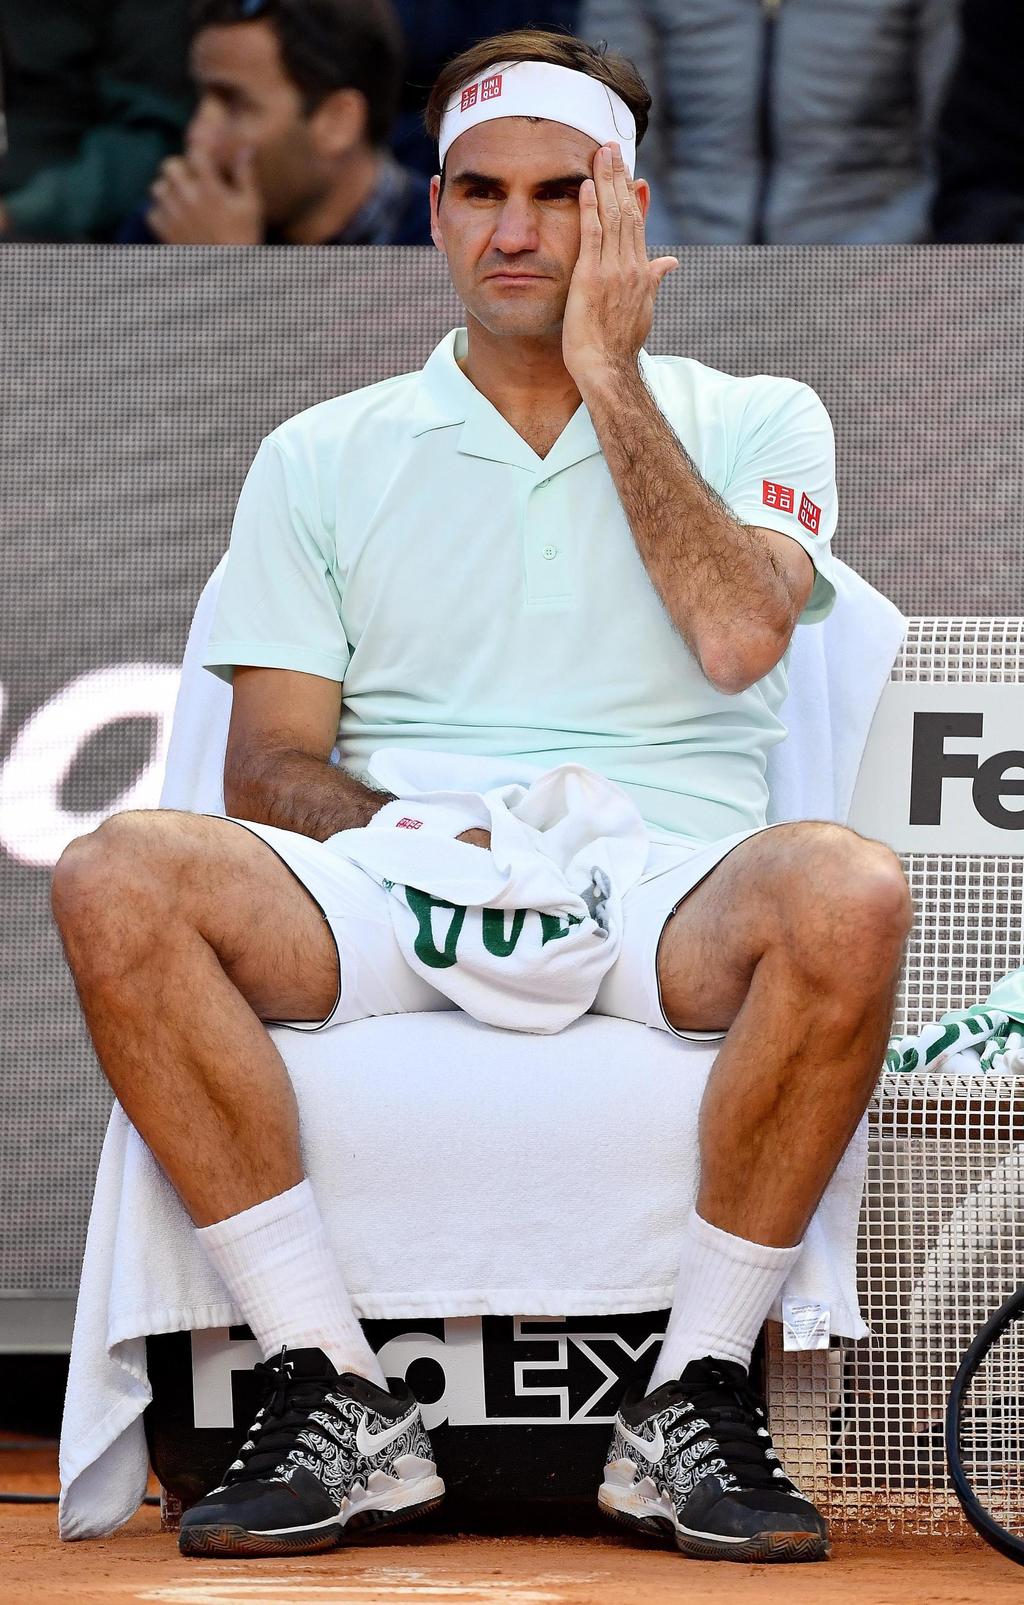 Luego de obtener dos victorias el jueves, el suizo Roger Federer se retiró del Masters 1000 de Roma, donde se iba a medir a Stefanos Tsitsipas.